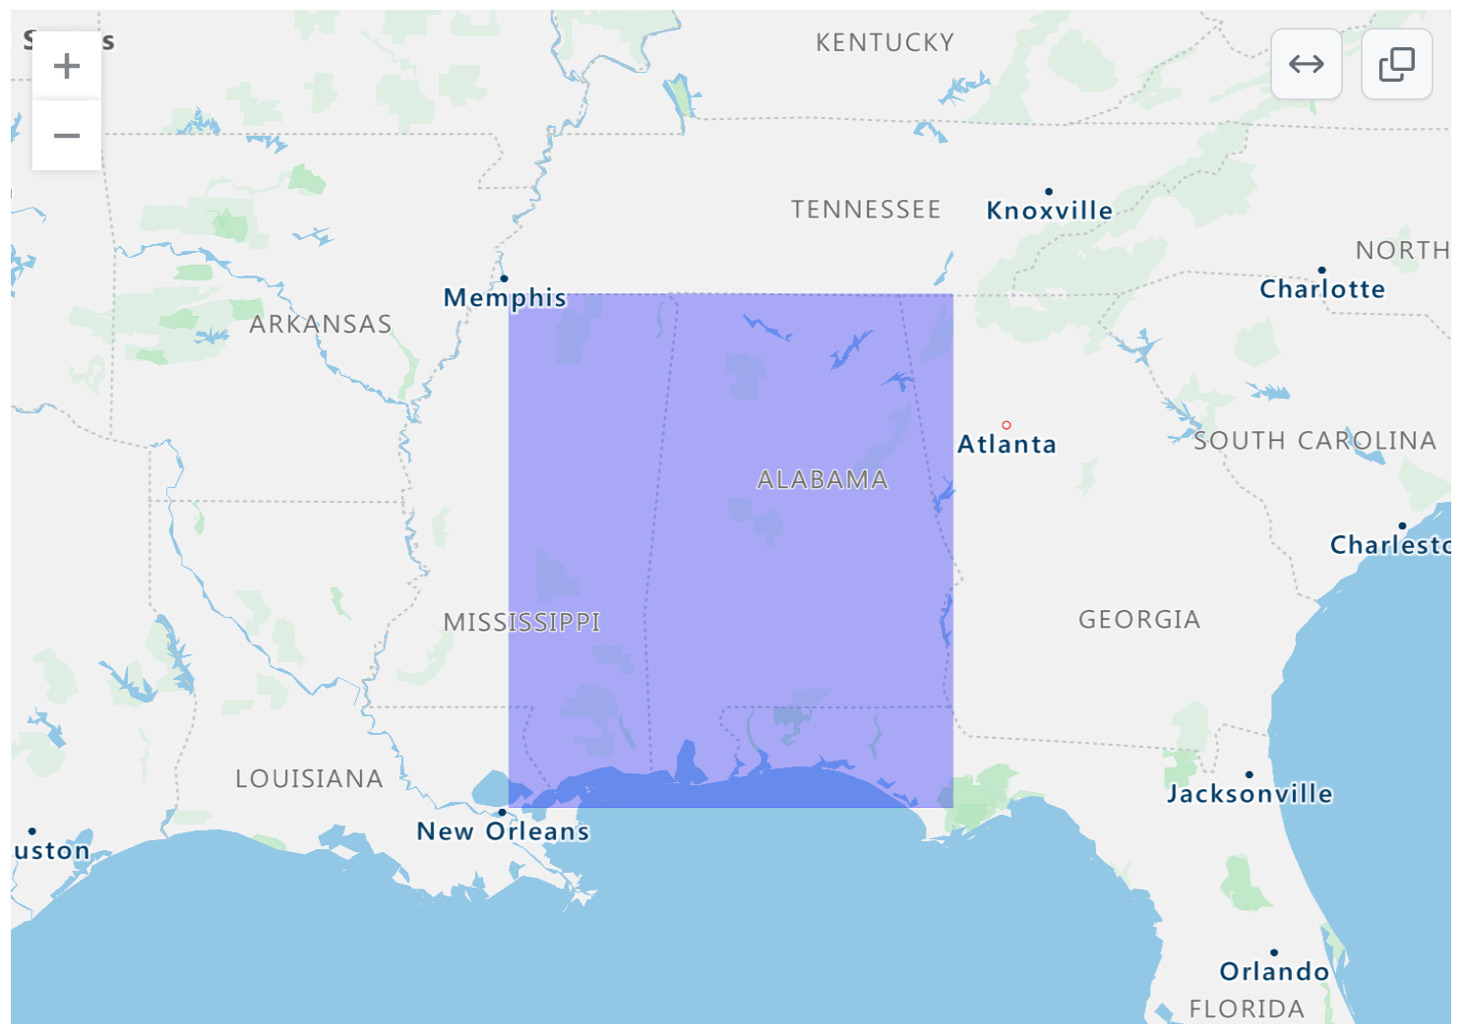 Captura de pantalla de un mapa GeoJSON representado del sudeste de Estados Unidos con una superposición rectangular púrpura en partes de Alabama y Misisipi.